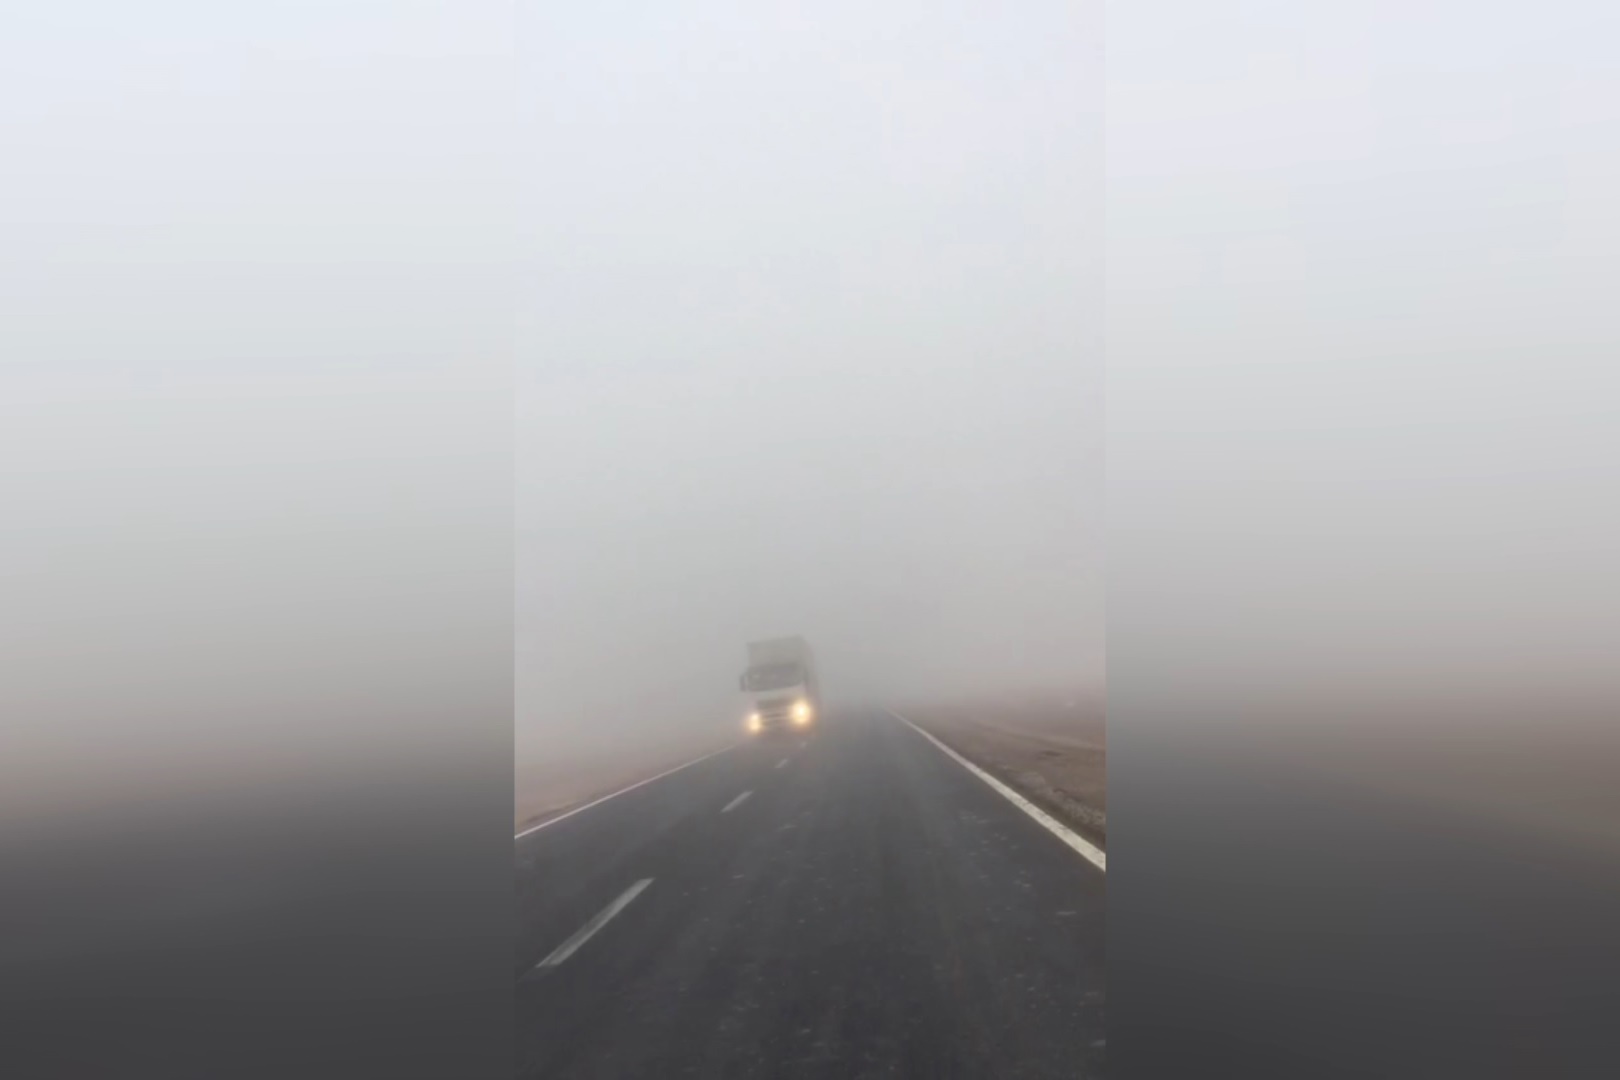 فیلم | مه غلیظی که برق آبادان را قطع کرد